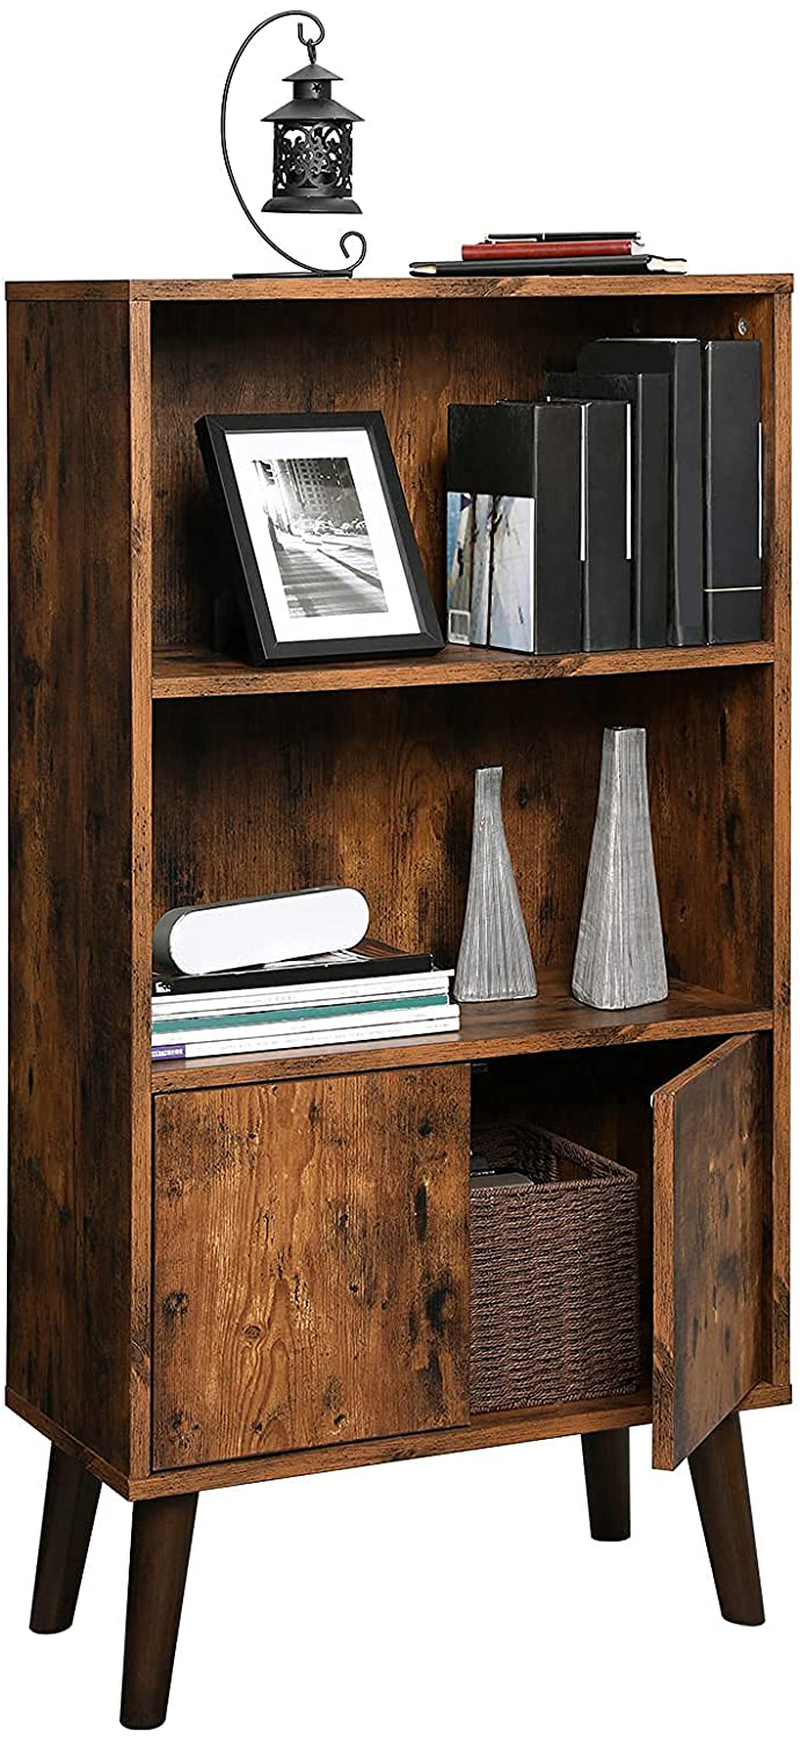 Rena 3-Tier Bookshelf with Doors Storage Cabinet 